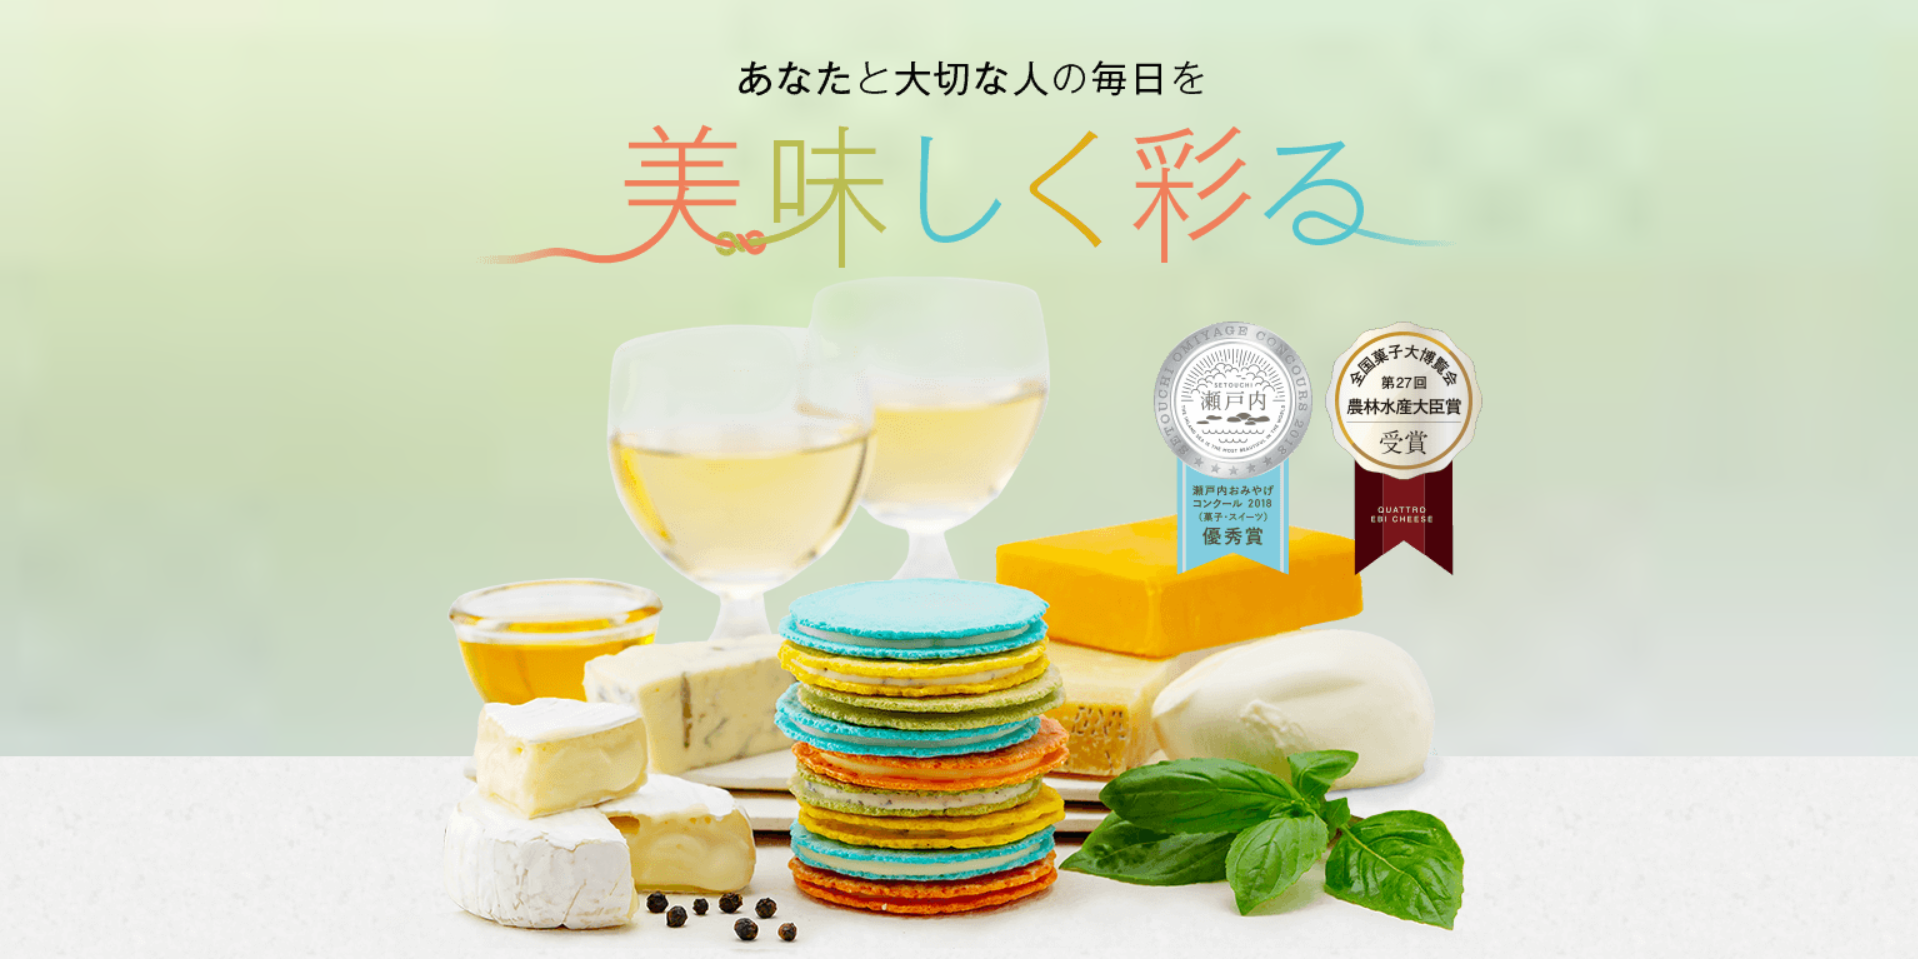 クアトロえびチーズ-えびとチーズの専門店SHIMAHIDE-33